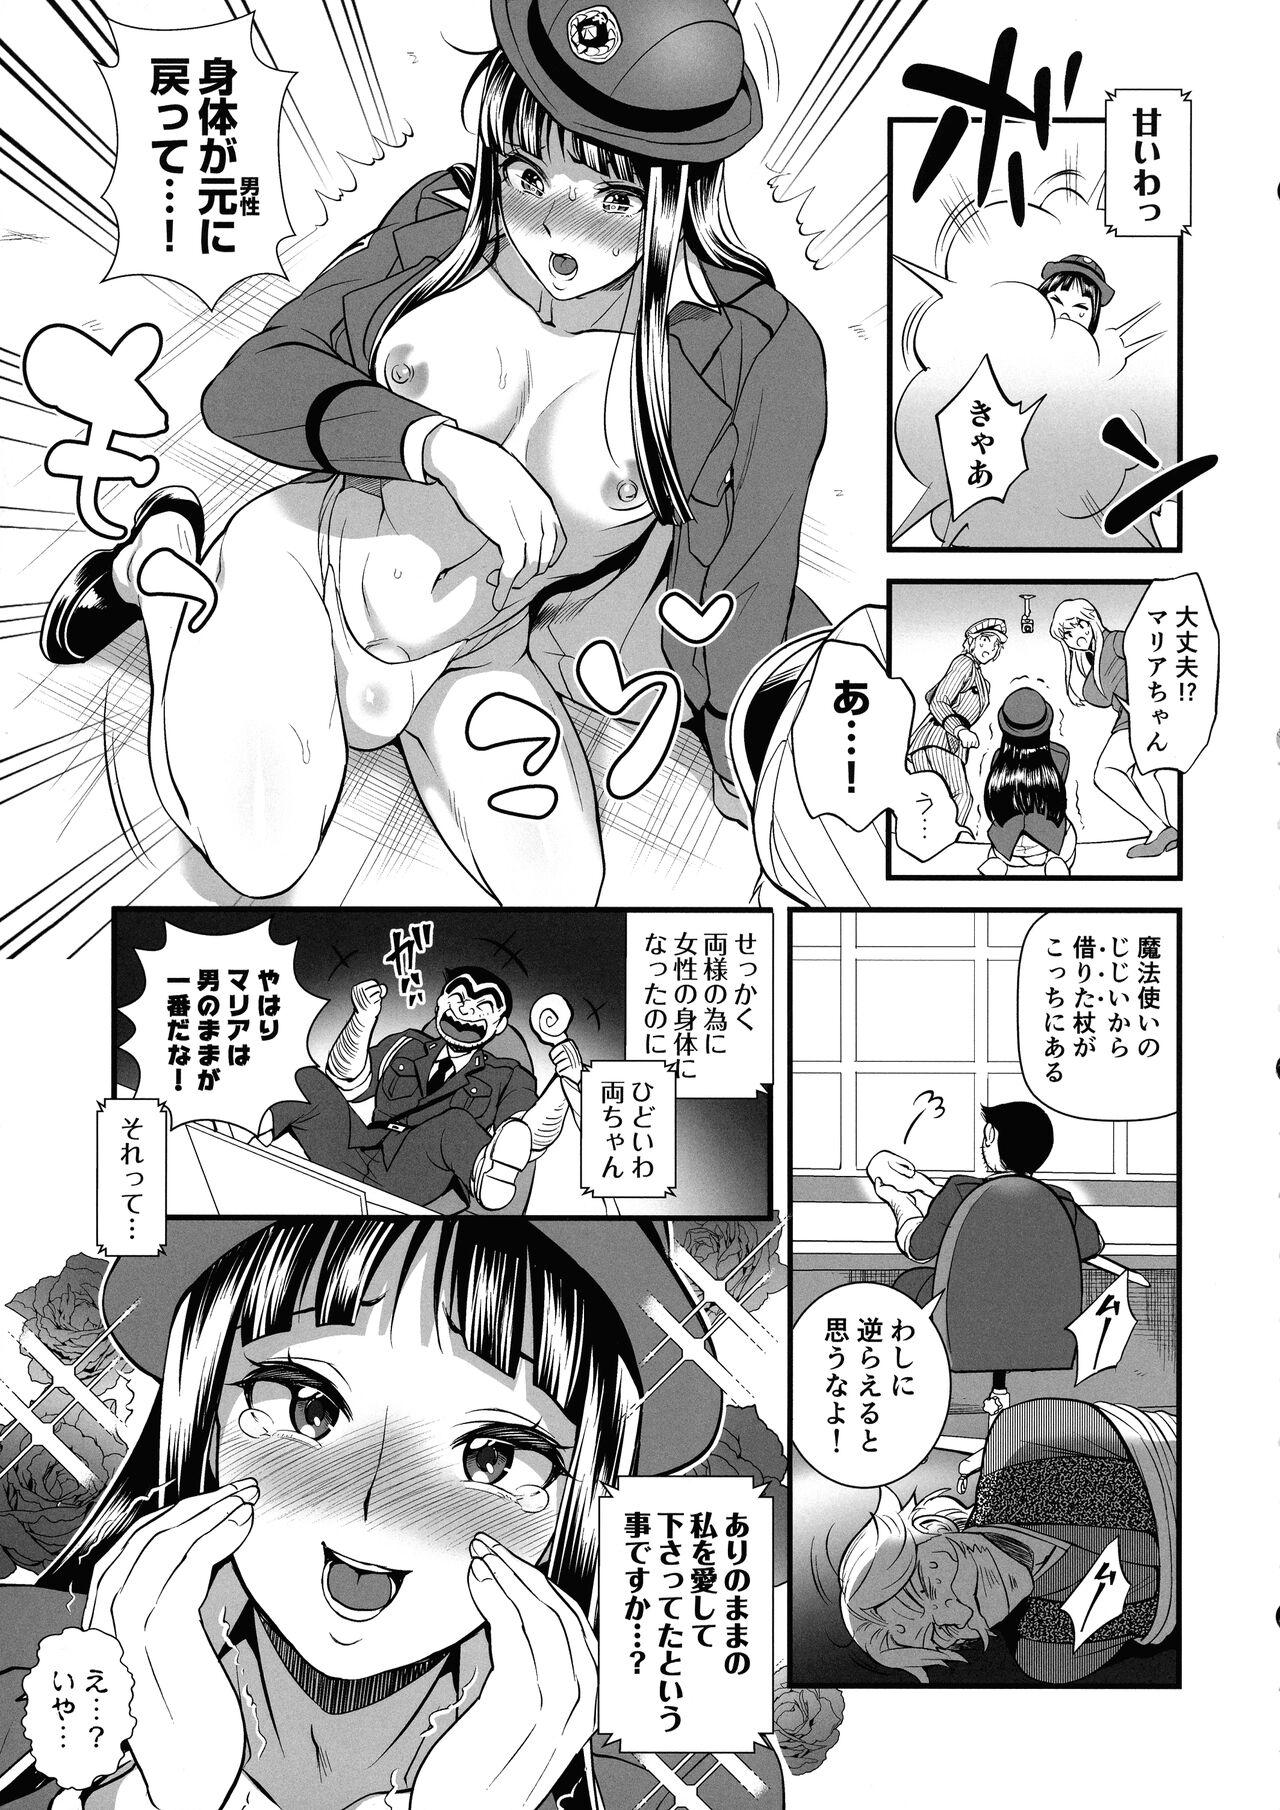 Reiko & Maria & Nakagawa ga Ogeretsuna Koto o Shinai to derarenai Heya no Maki 8